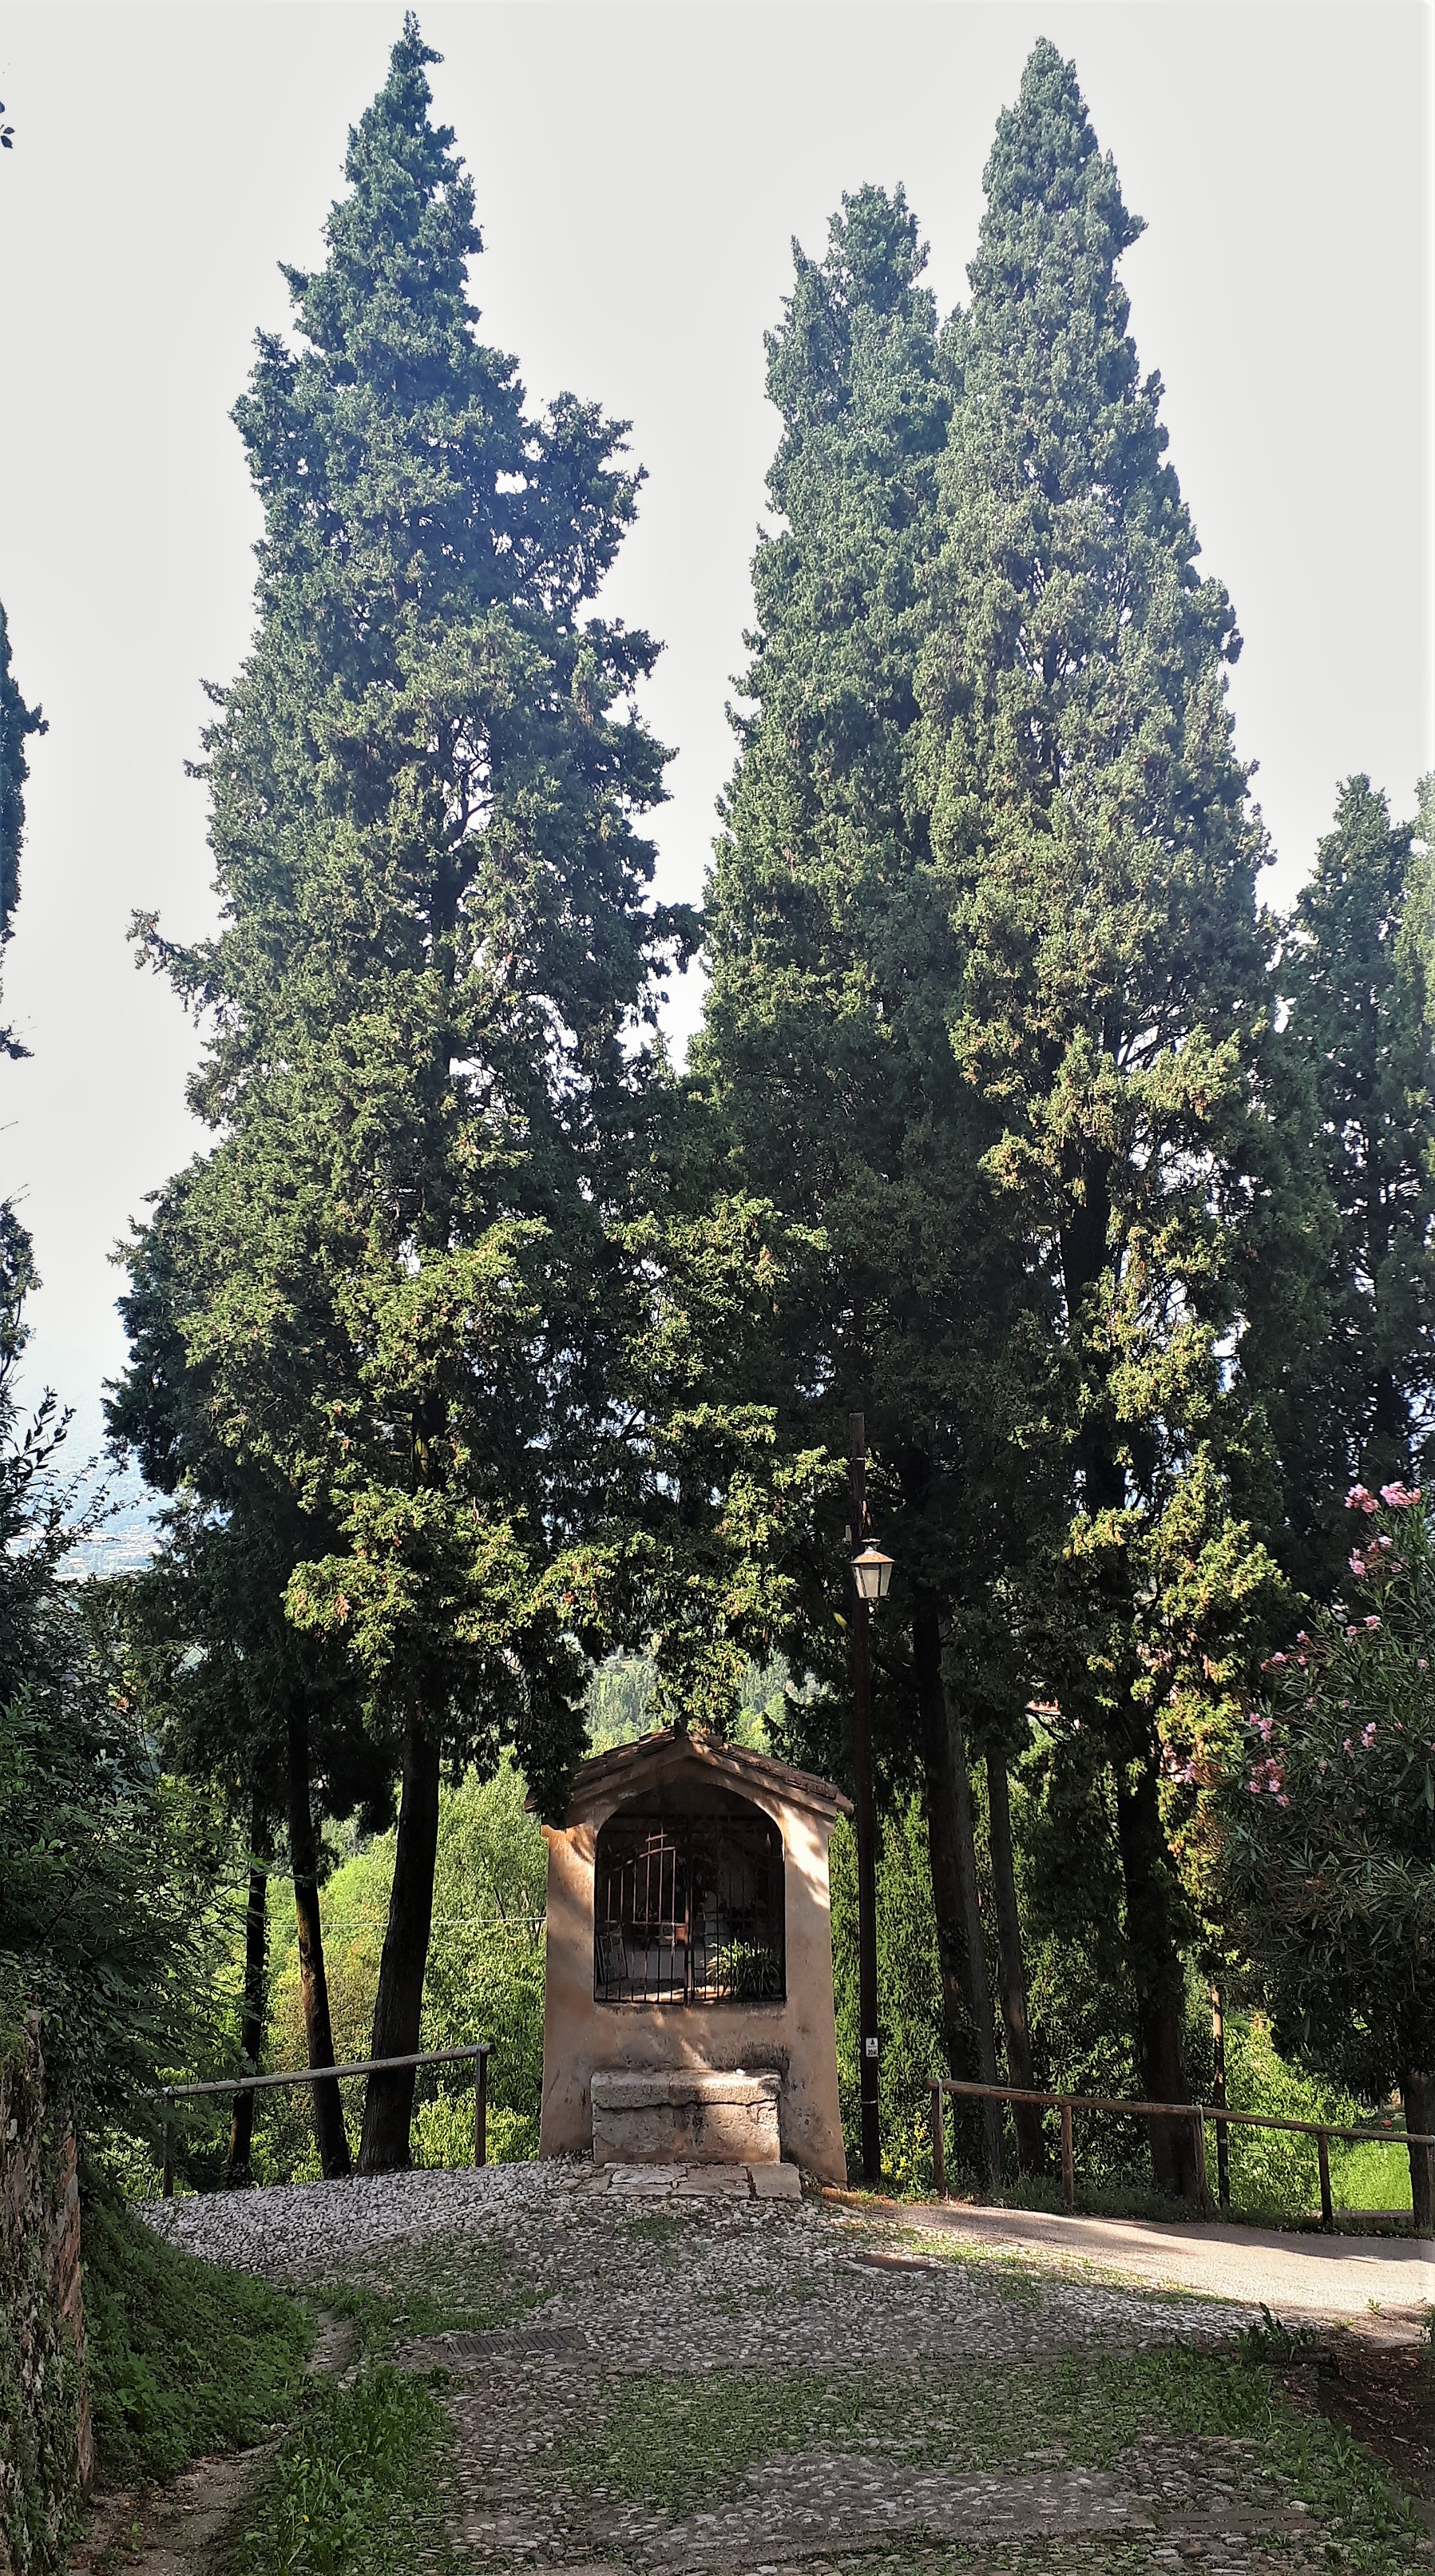 Parco della Rimembranza di Asolo (parco, commemorativo ai caduti della prima guerra mondiale) - Asolo (TV) 